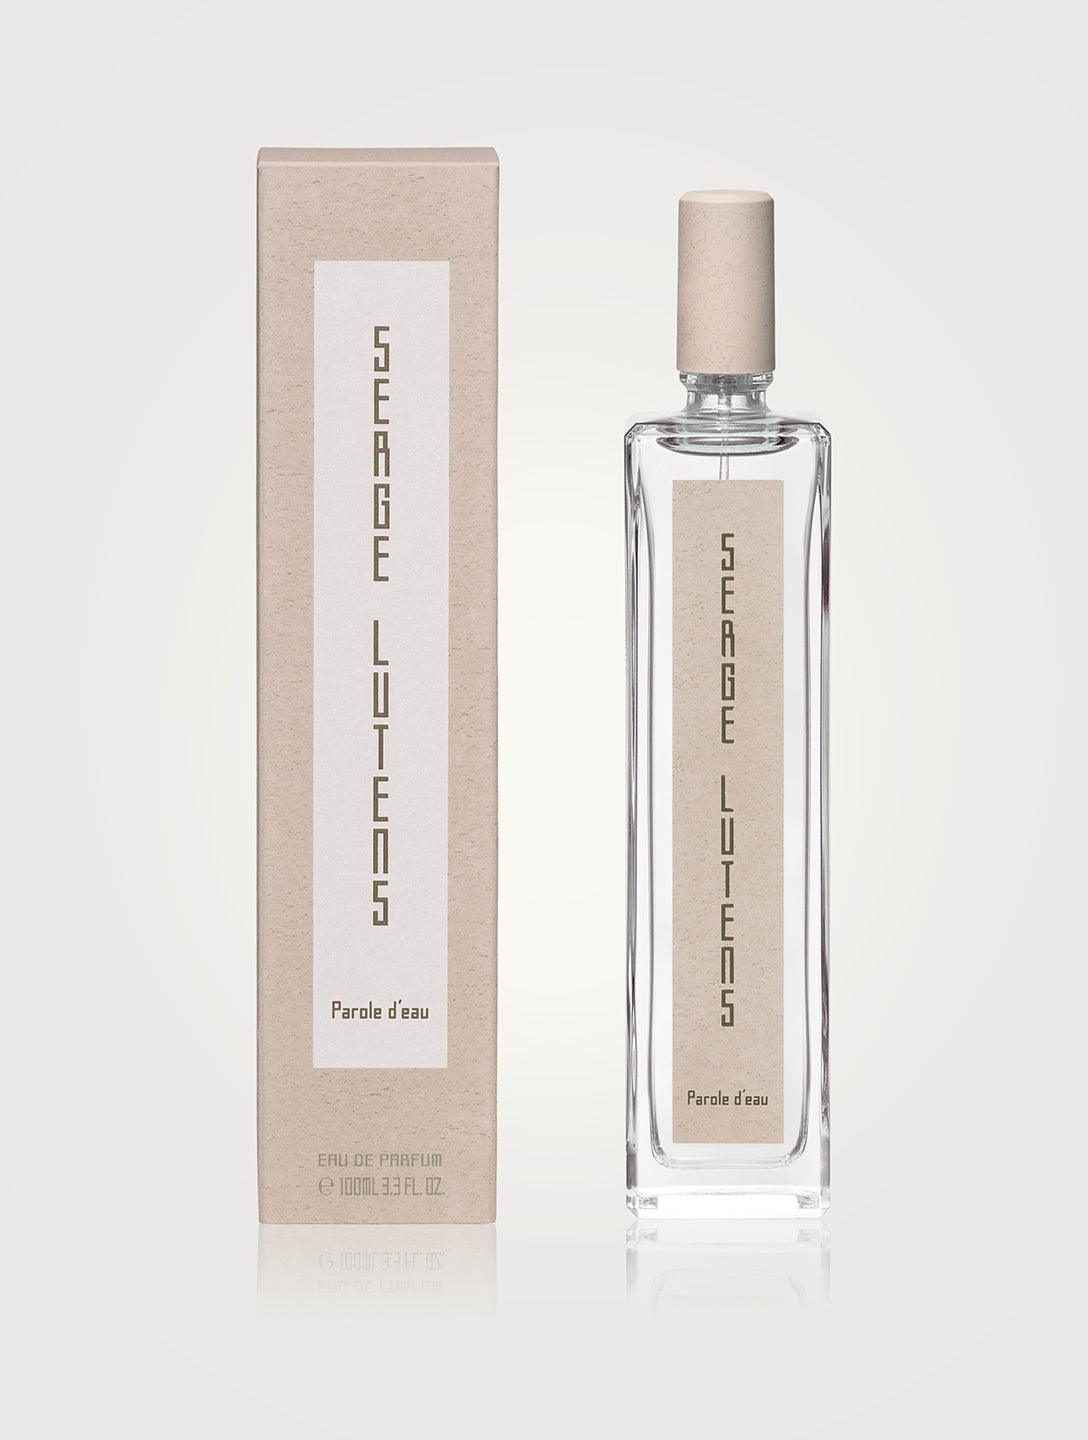 Serge Lutens Parole D'eau Eau de Parfum - Parfum Gallerie